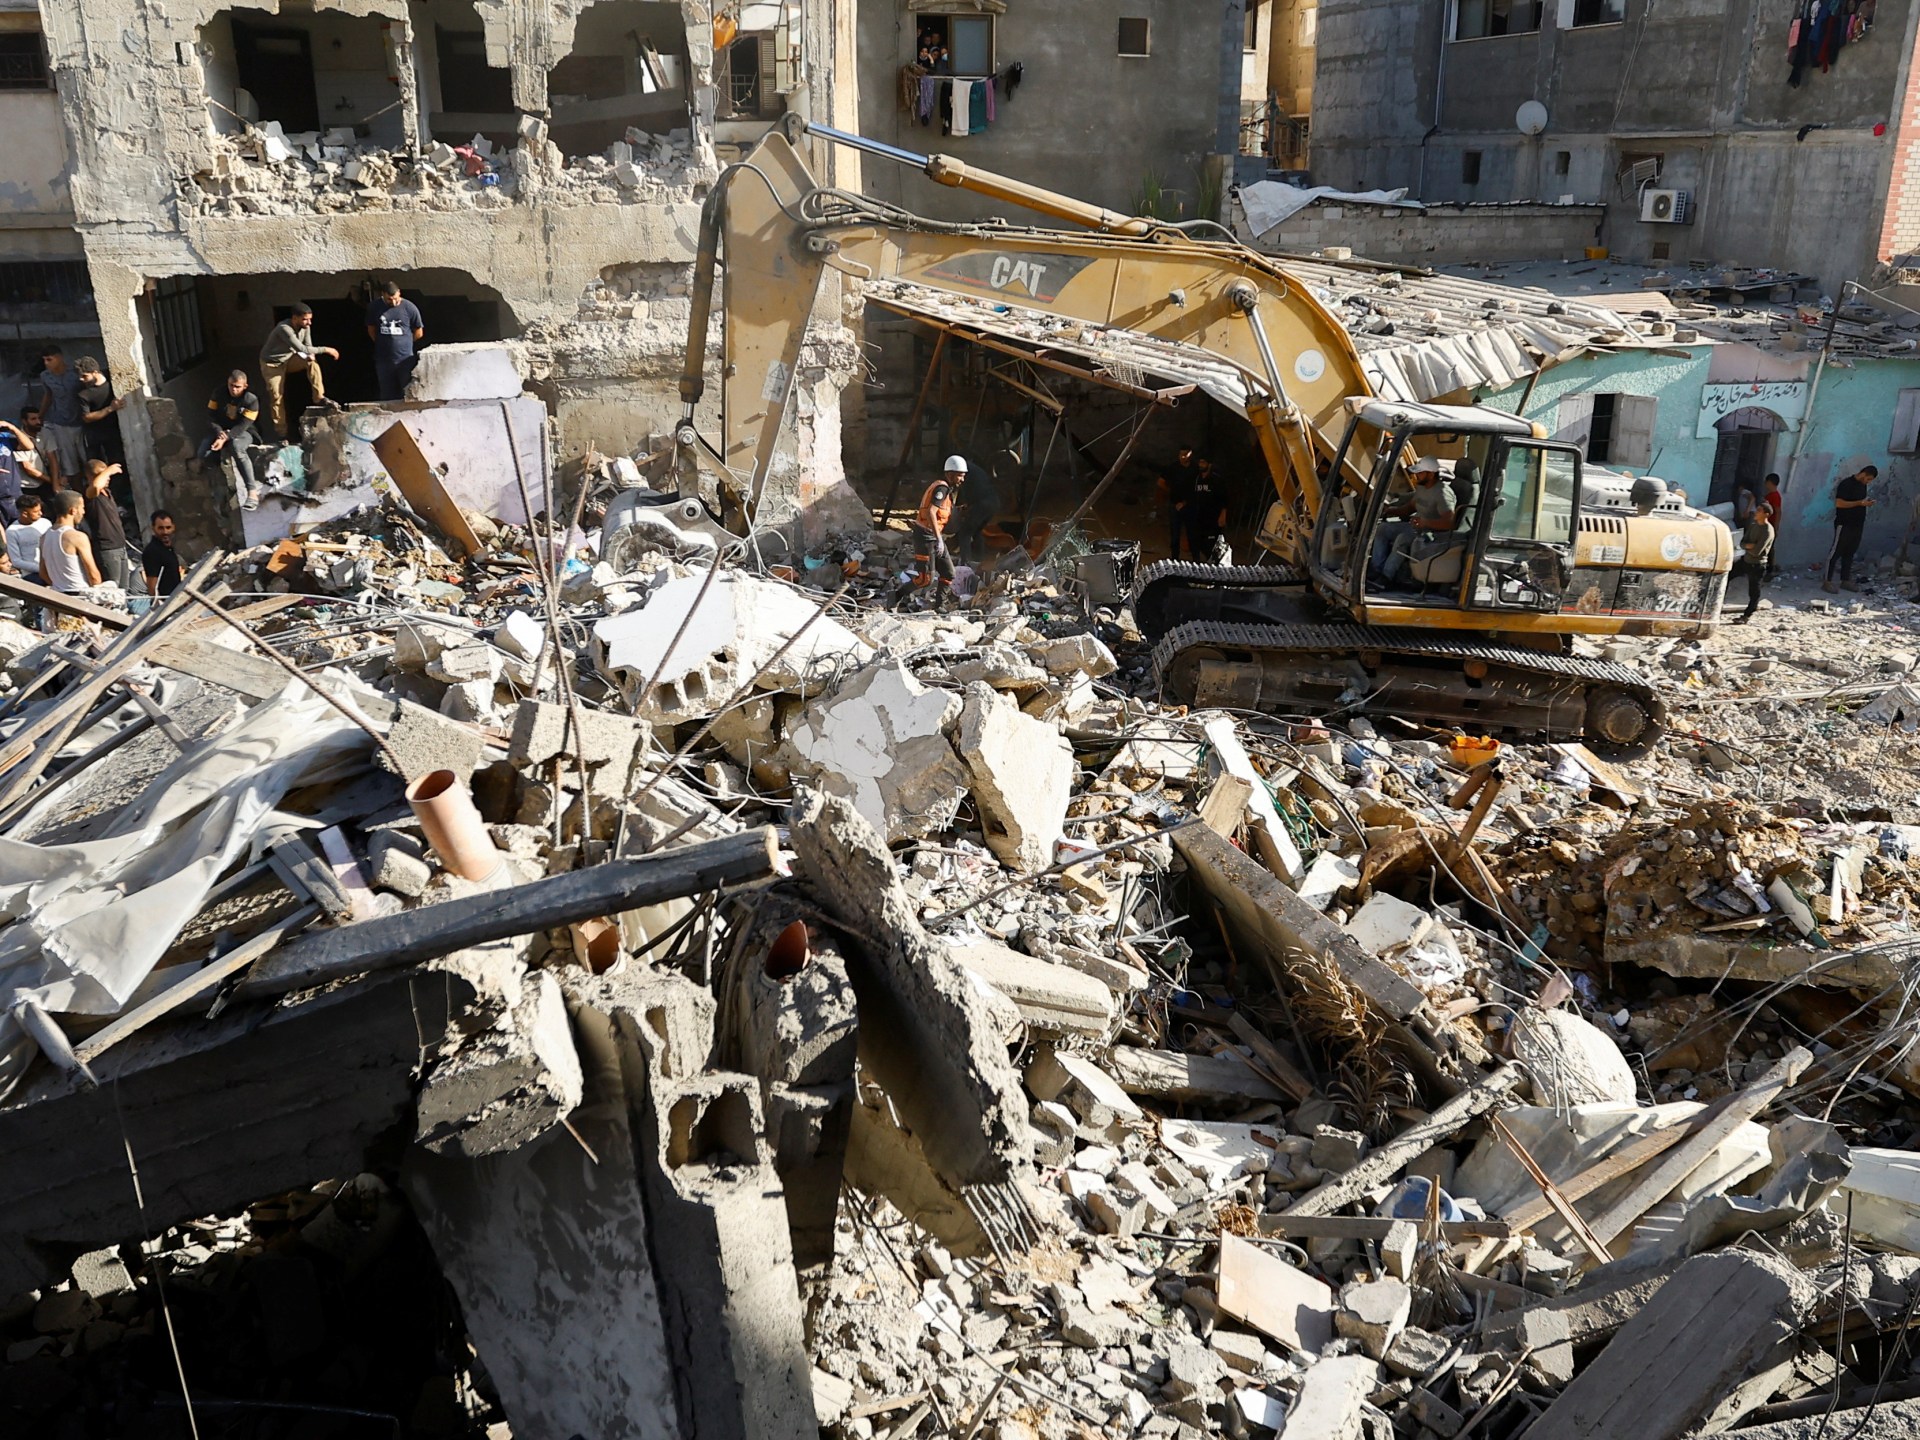 ديفيد هيرست: كيف ترى “حماس” تطورات الصراع في غزة؟ | أخبار جولة الصحافة – البوكس نيوز